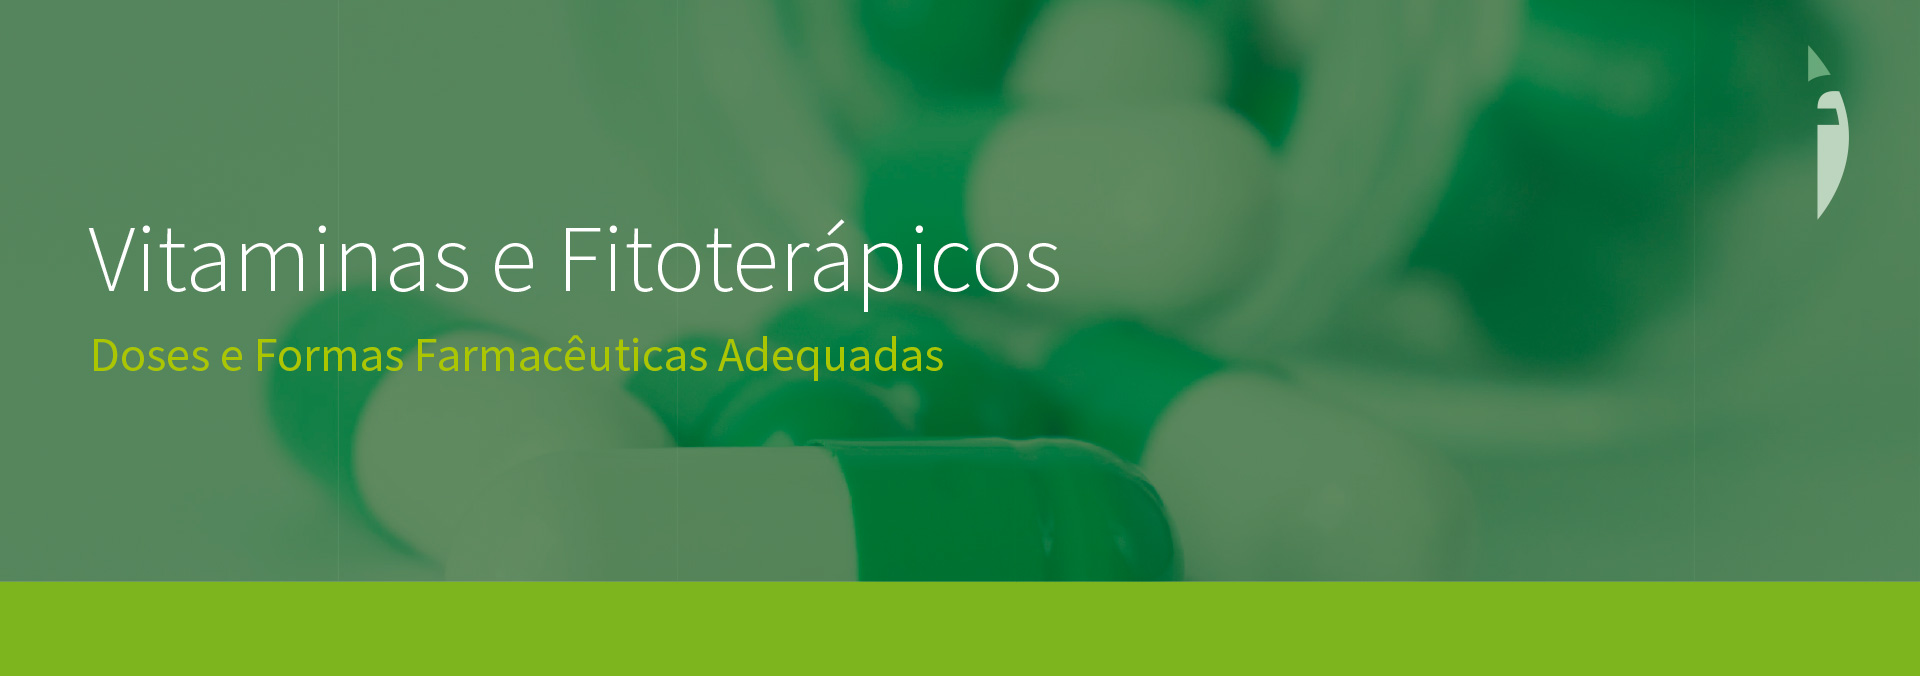 Vitaminas e Fitoterápicos - Doses e Formas Farmacêuticas Adequadas